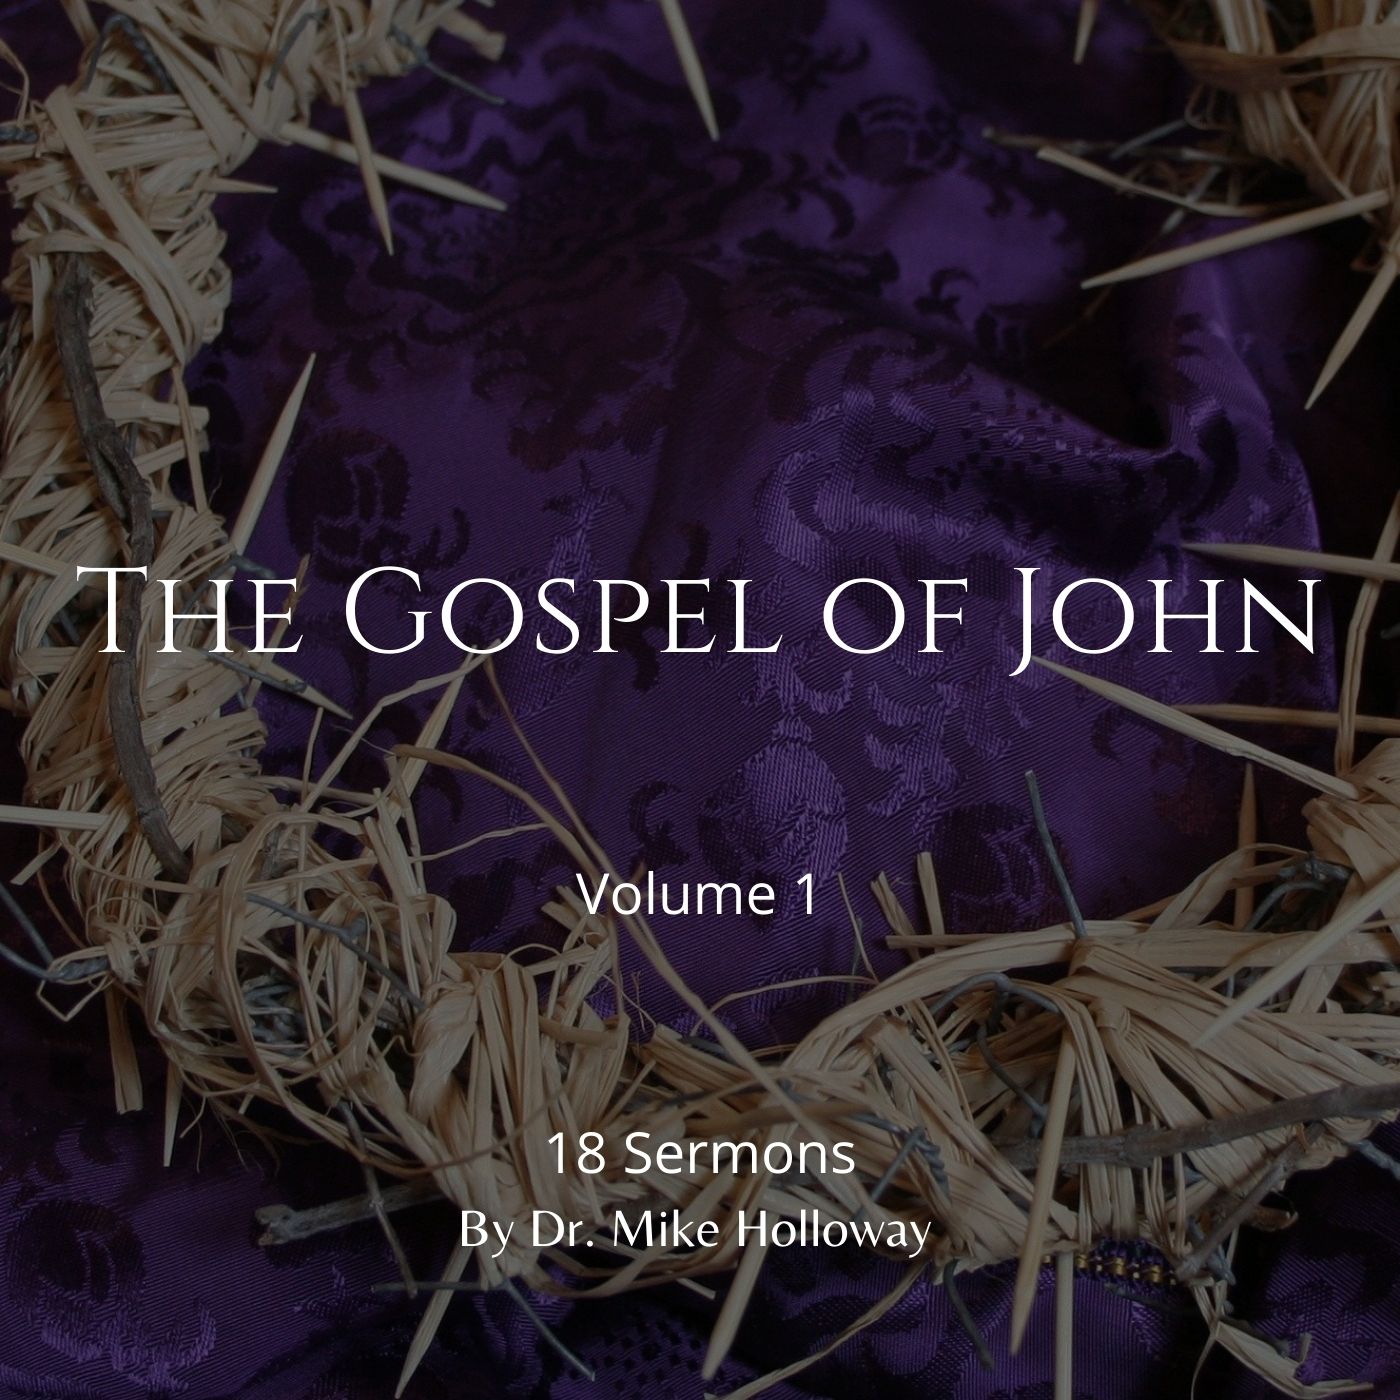 The Gospel of John – Volume 1